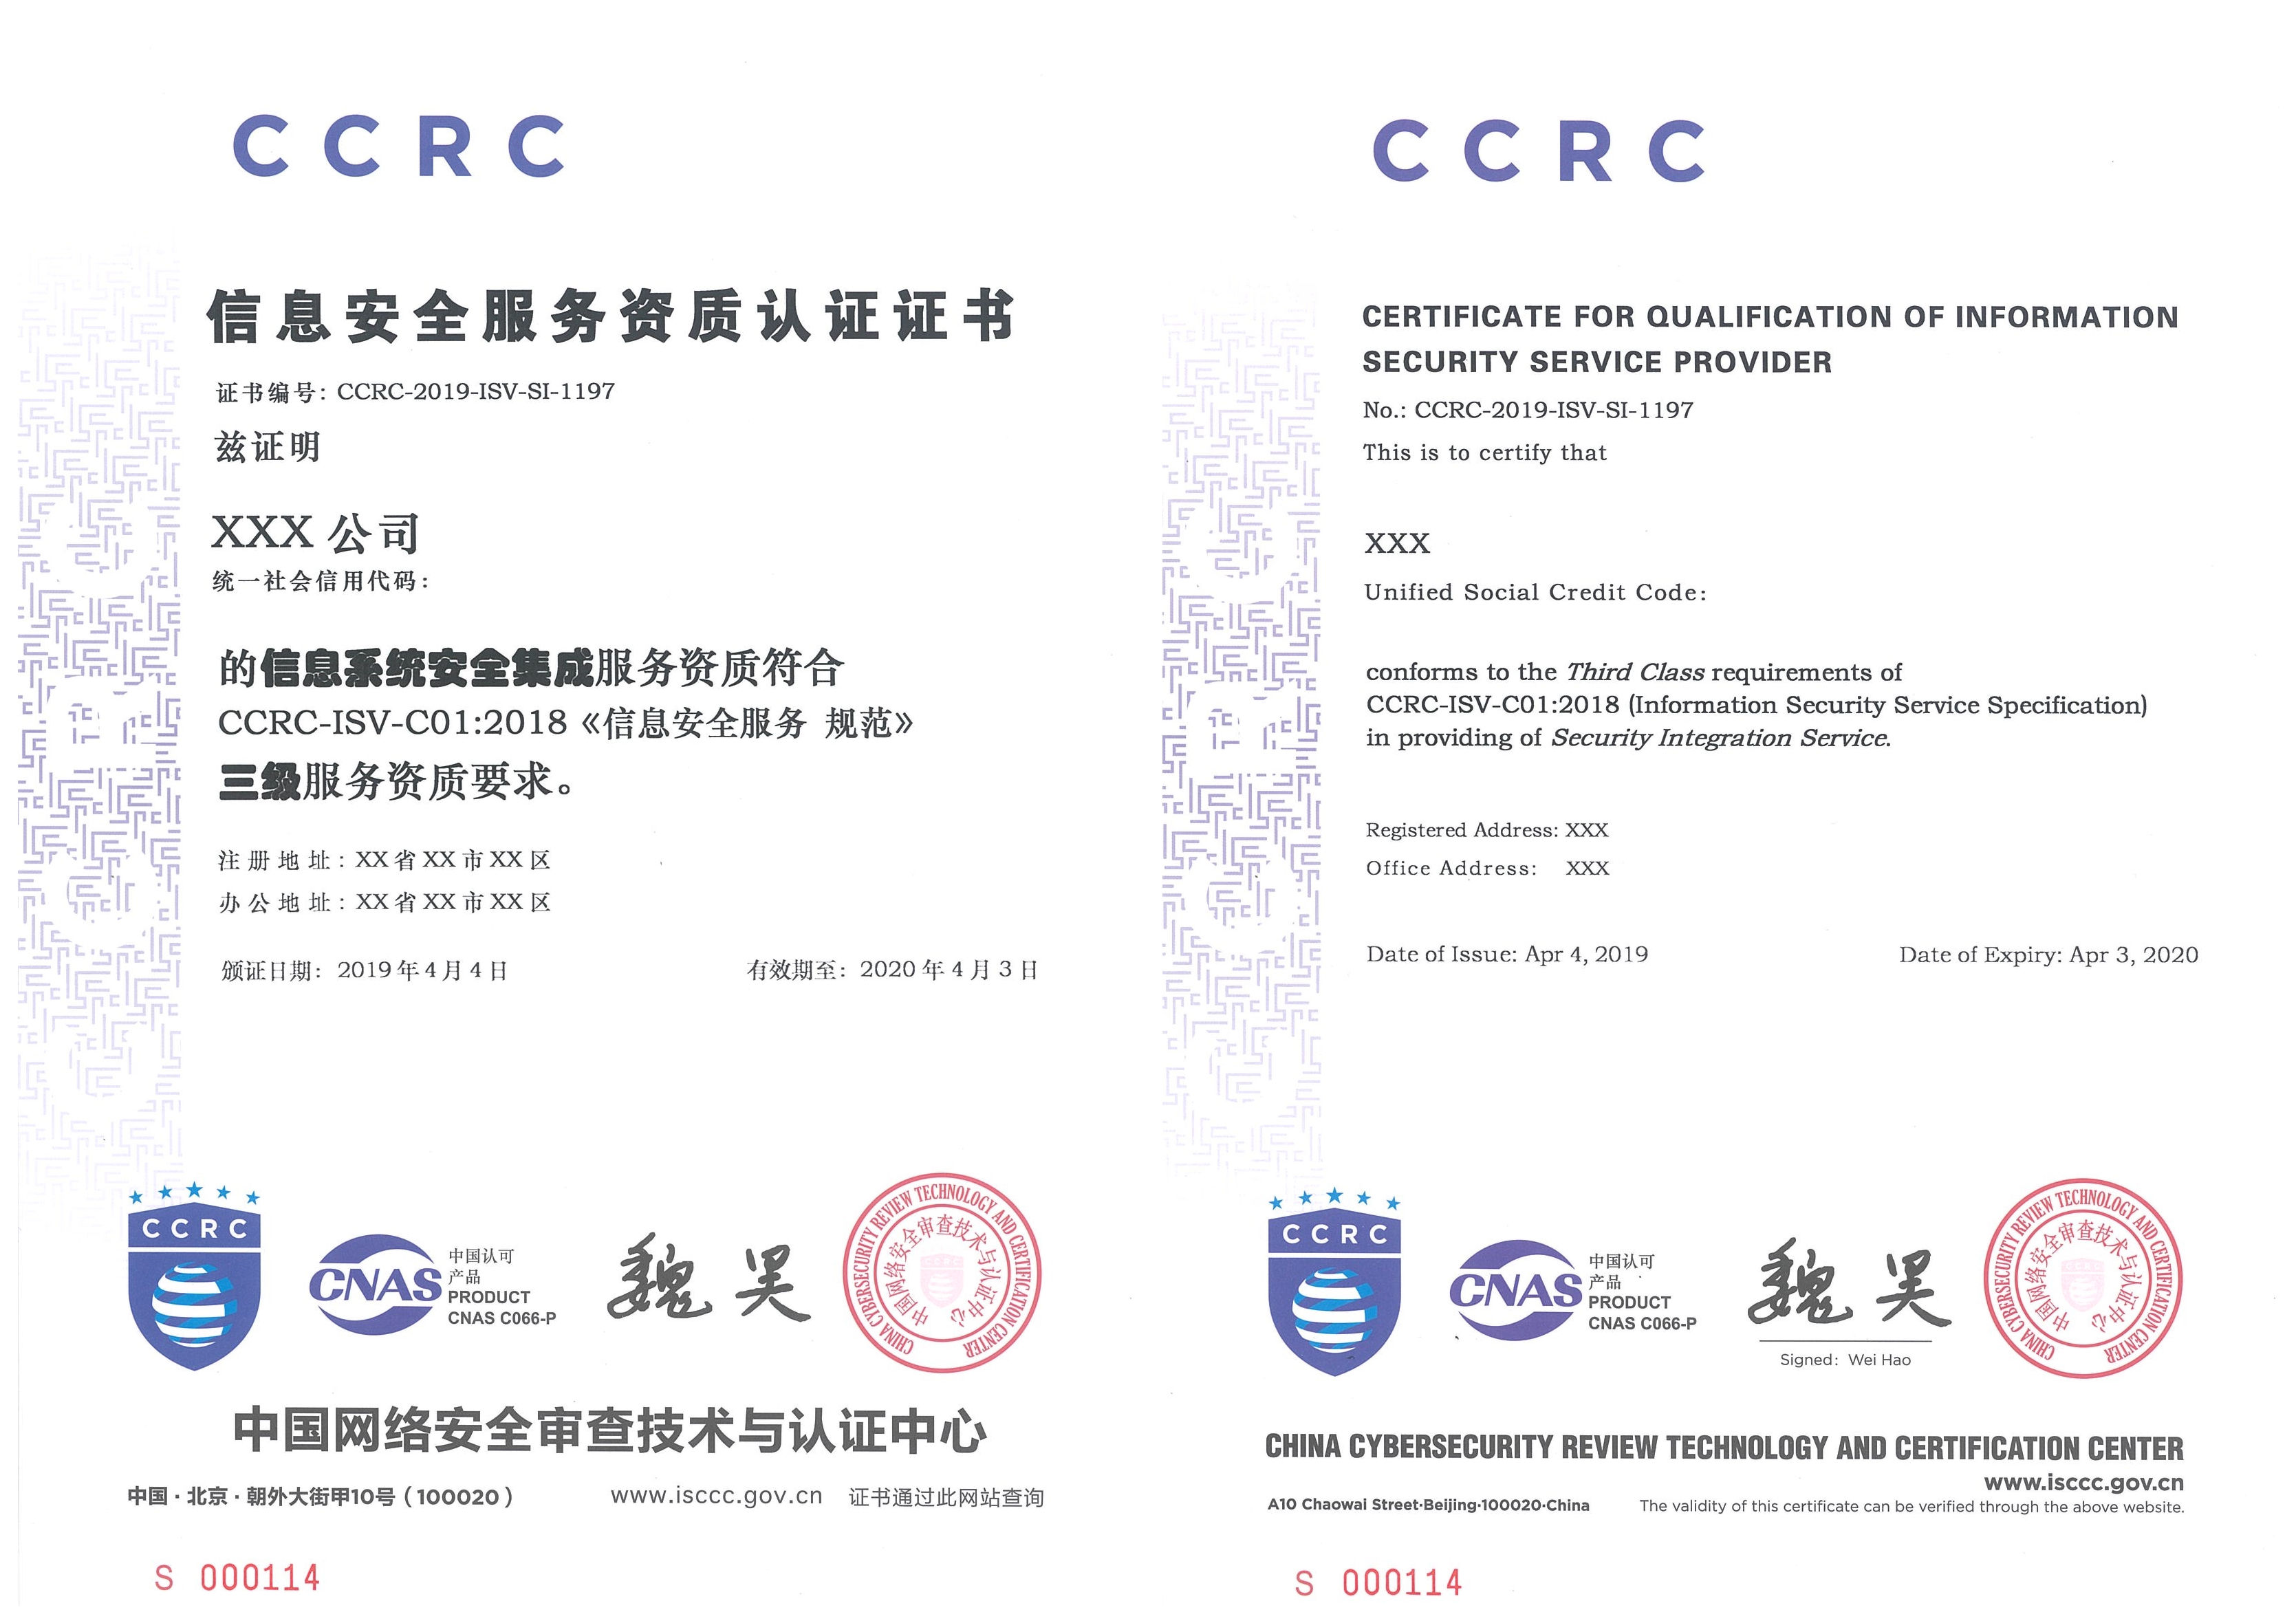 赛虎网安关于由中国网络安全审查技术与认证中心颁发的信息安全服务资质（CCRC）认证证书样本